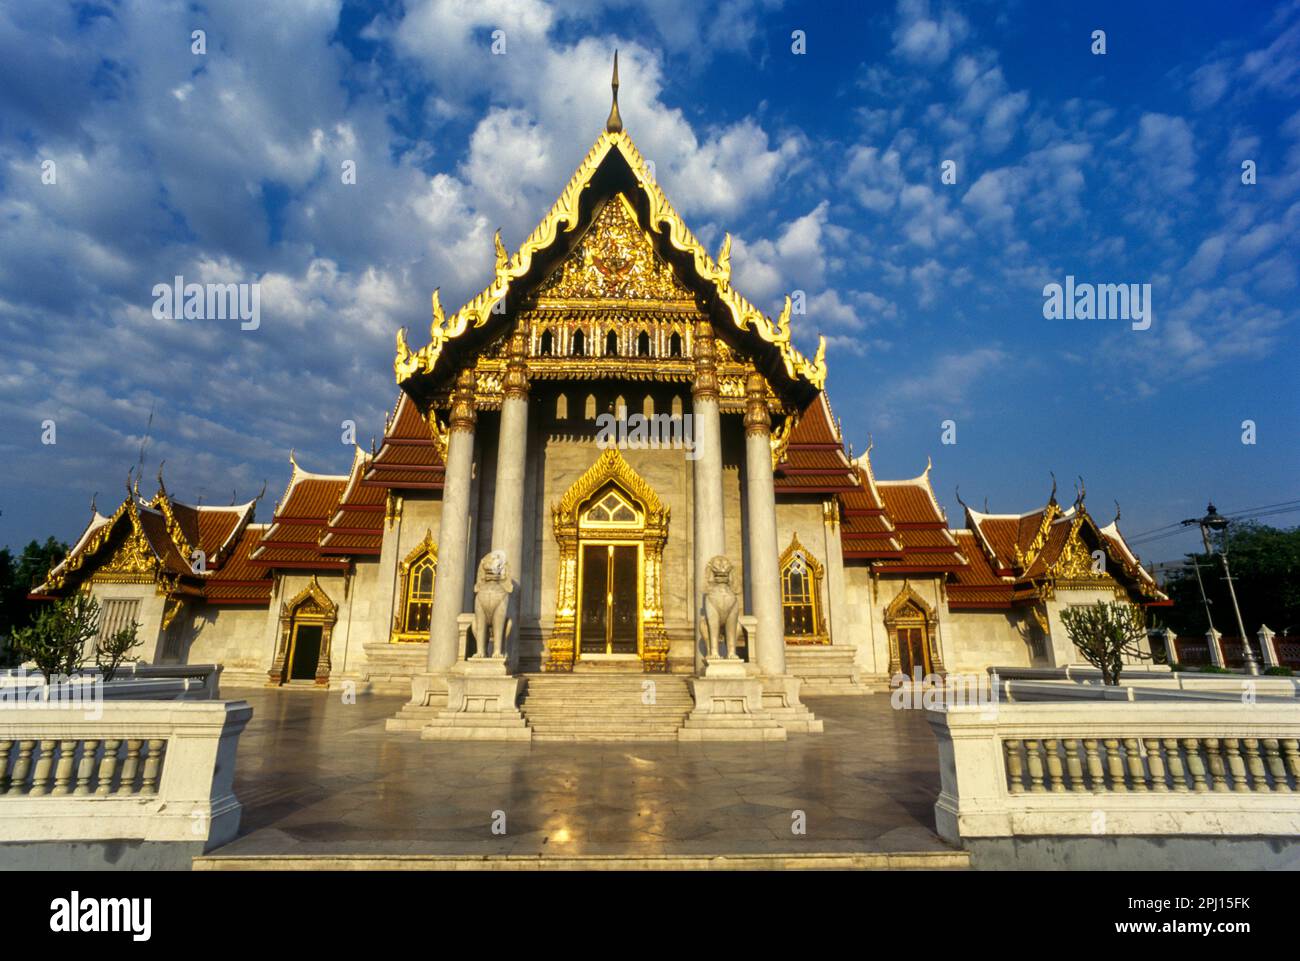 WAT BENCHAMABOPHIT MARBLE TEMPLE BANGKOK THAILAND Stock Photo